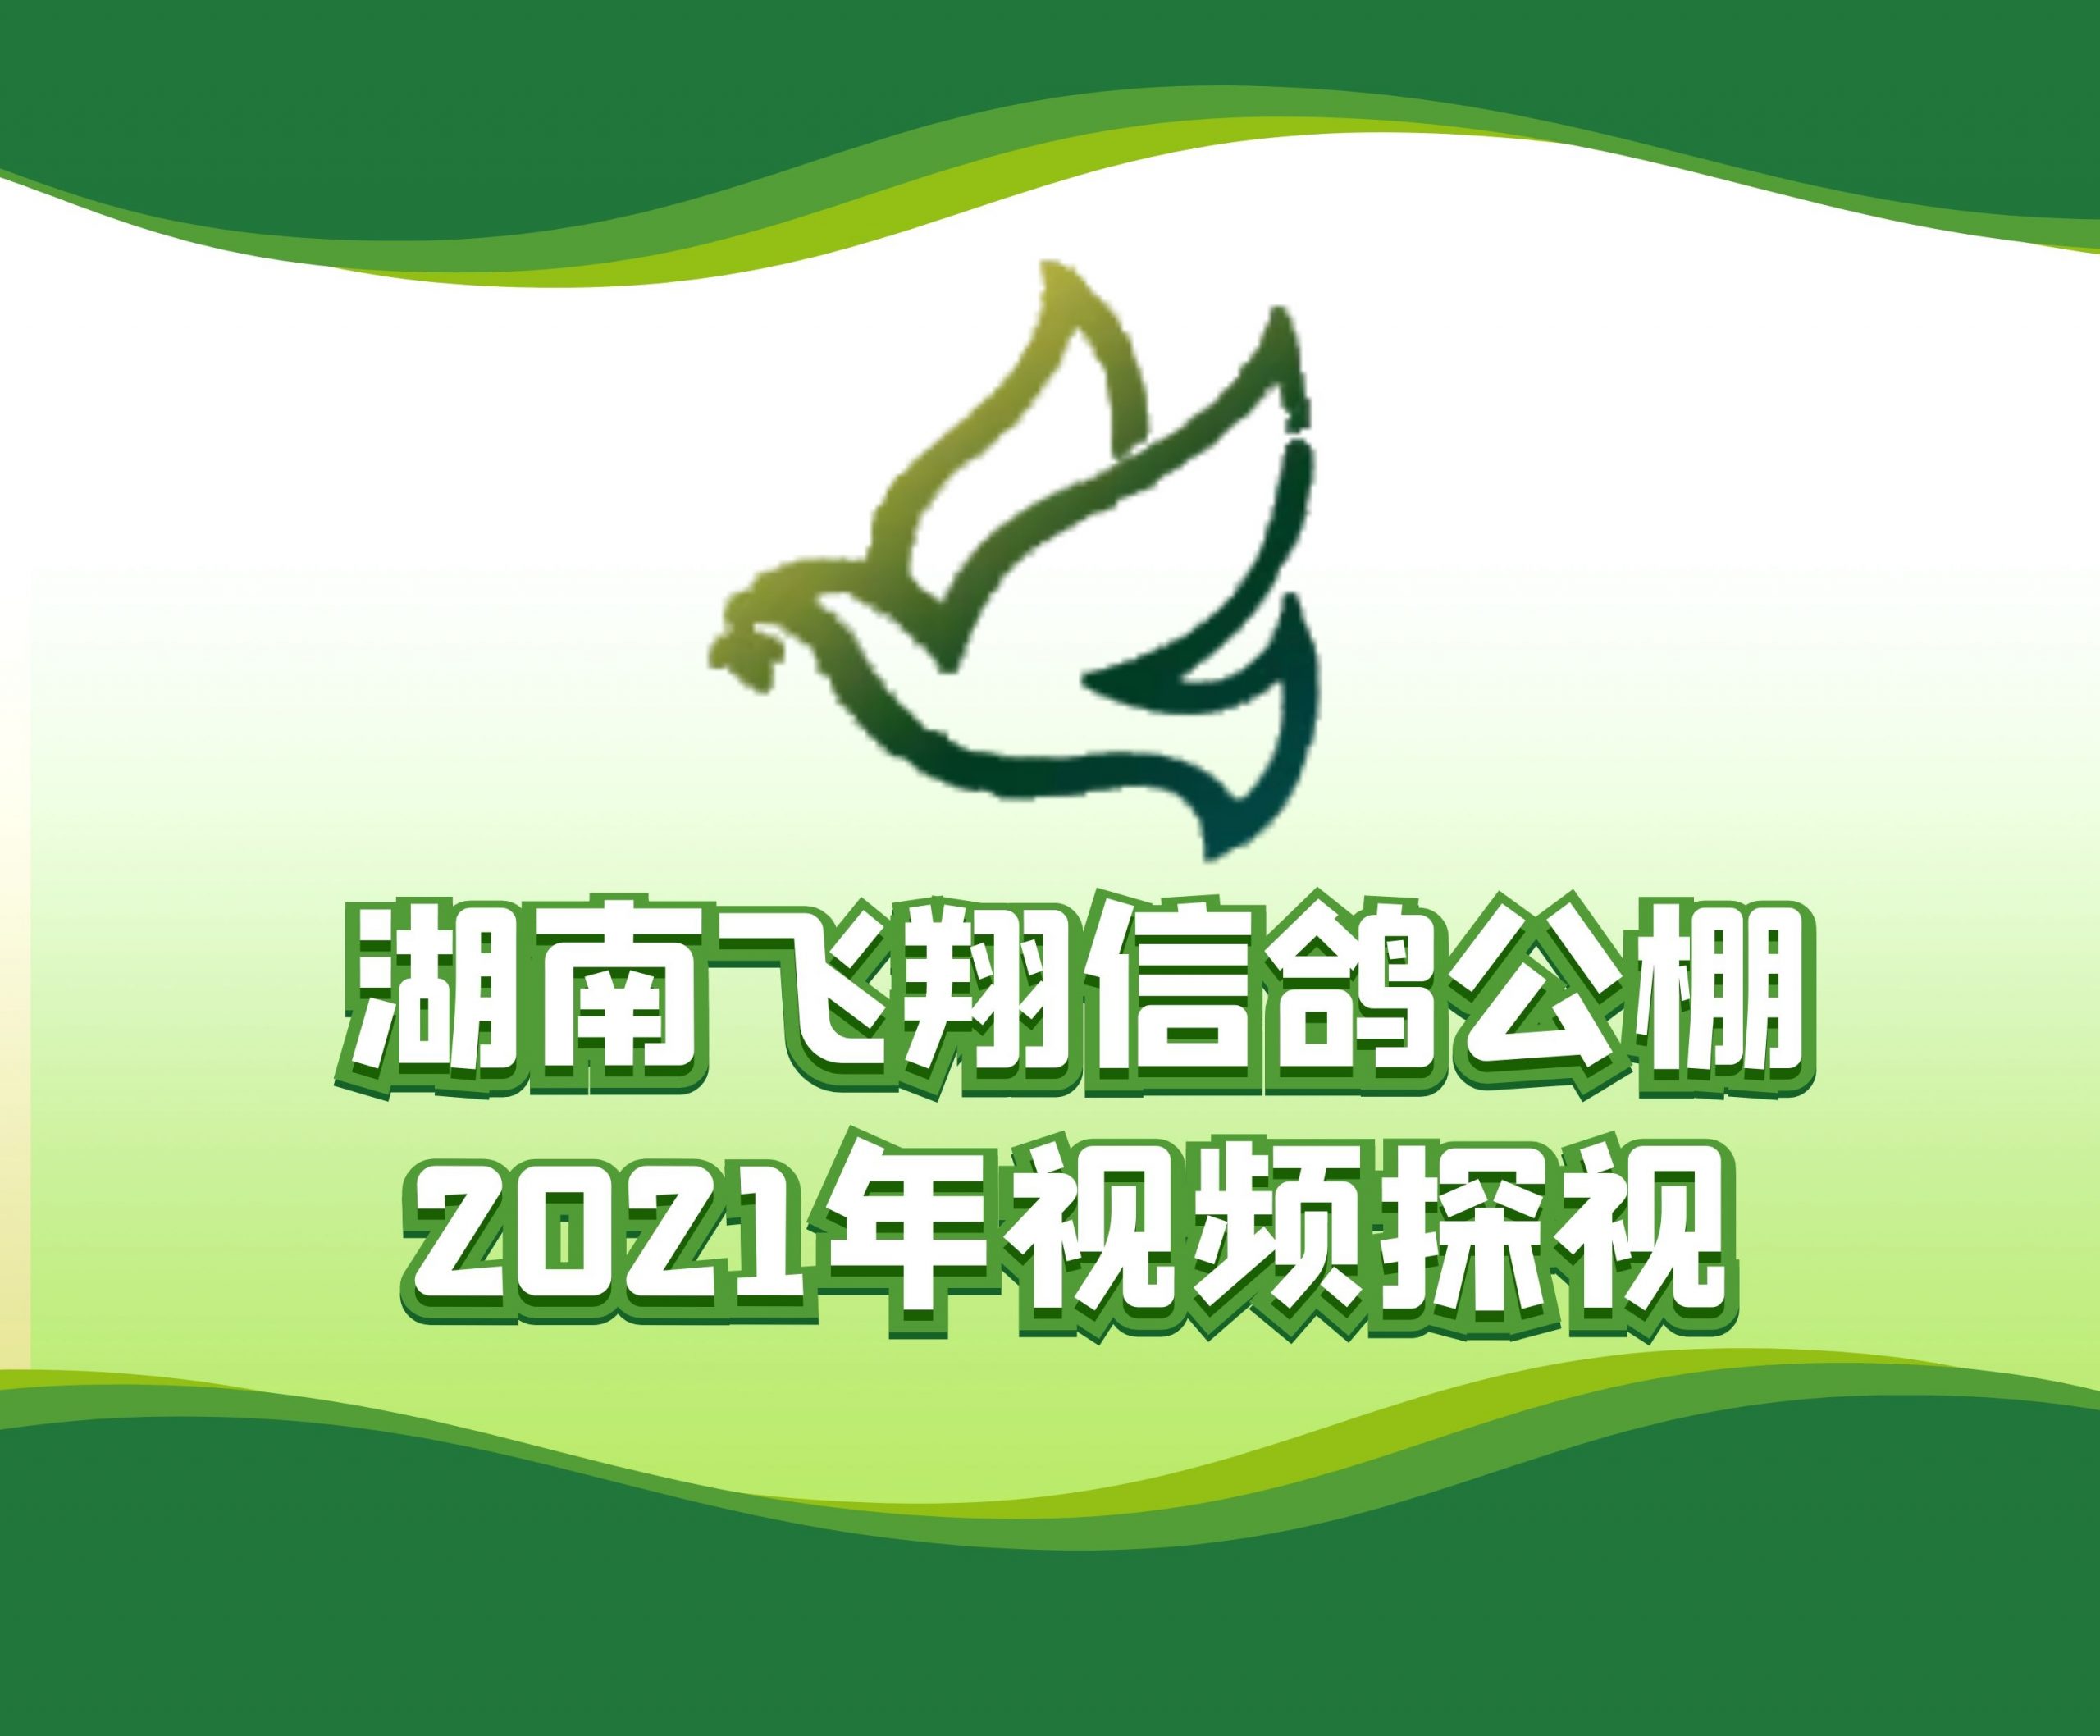 刘利民-2021-14-0053648